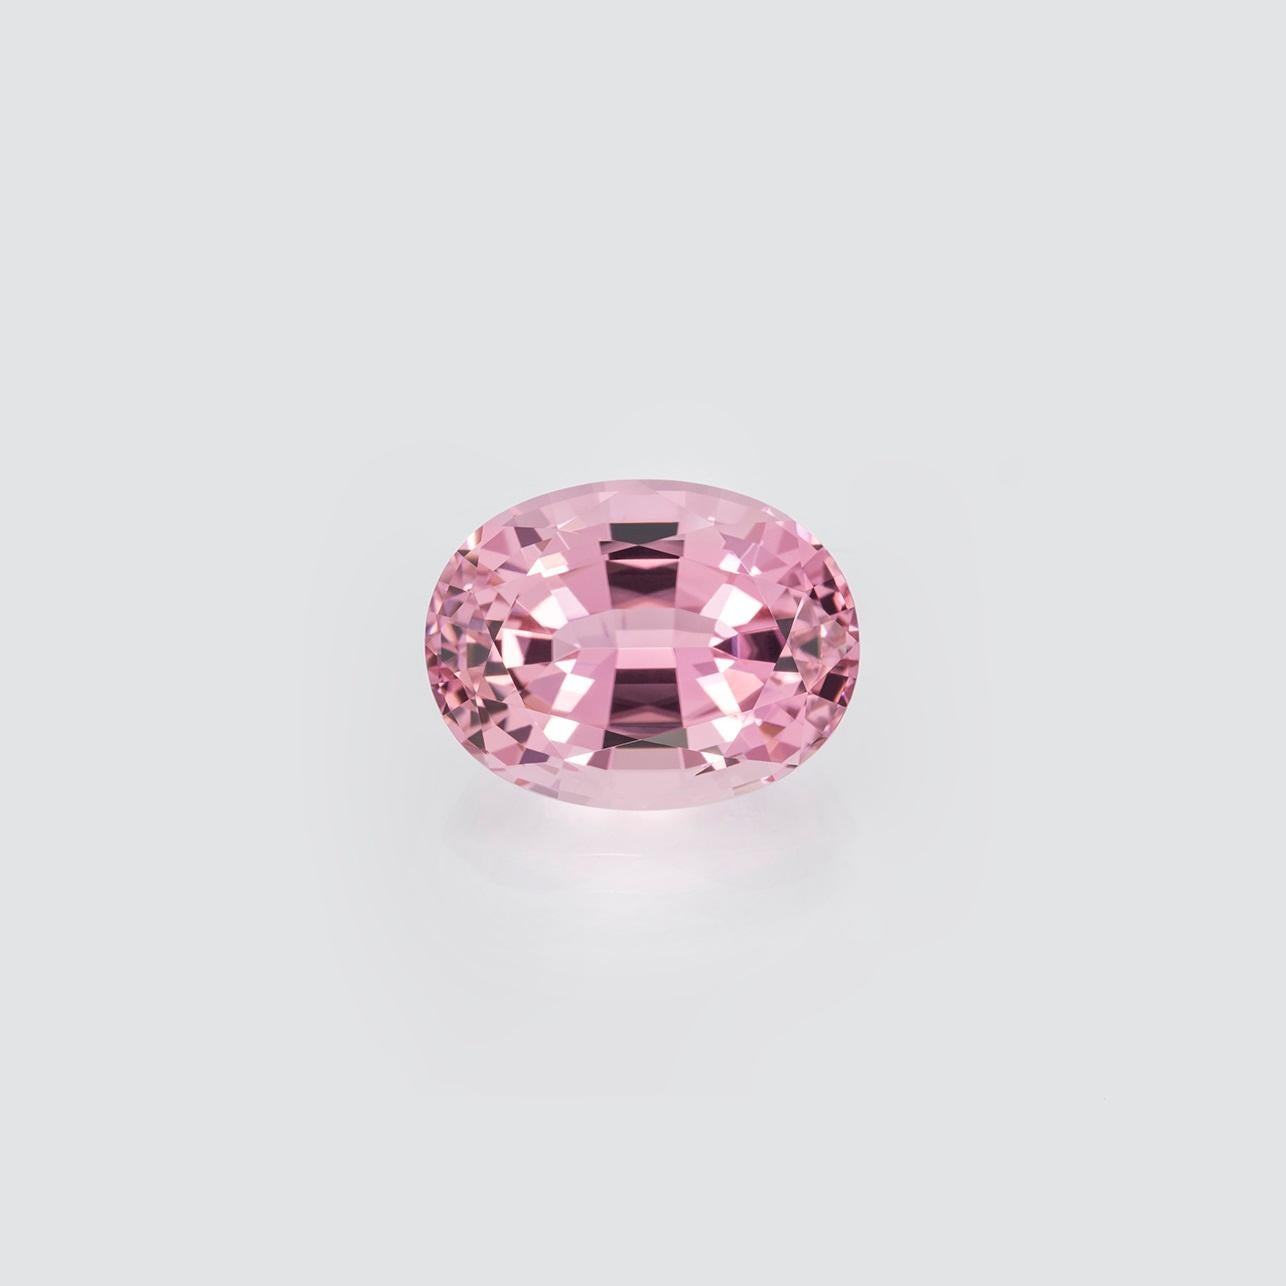 Modern Pink Tourmaline Ring Gem 11.35 Carat Oval Loose Unset Gemstone